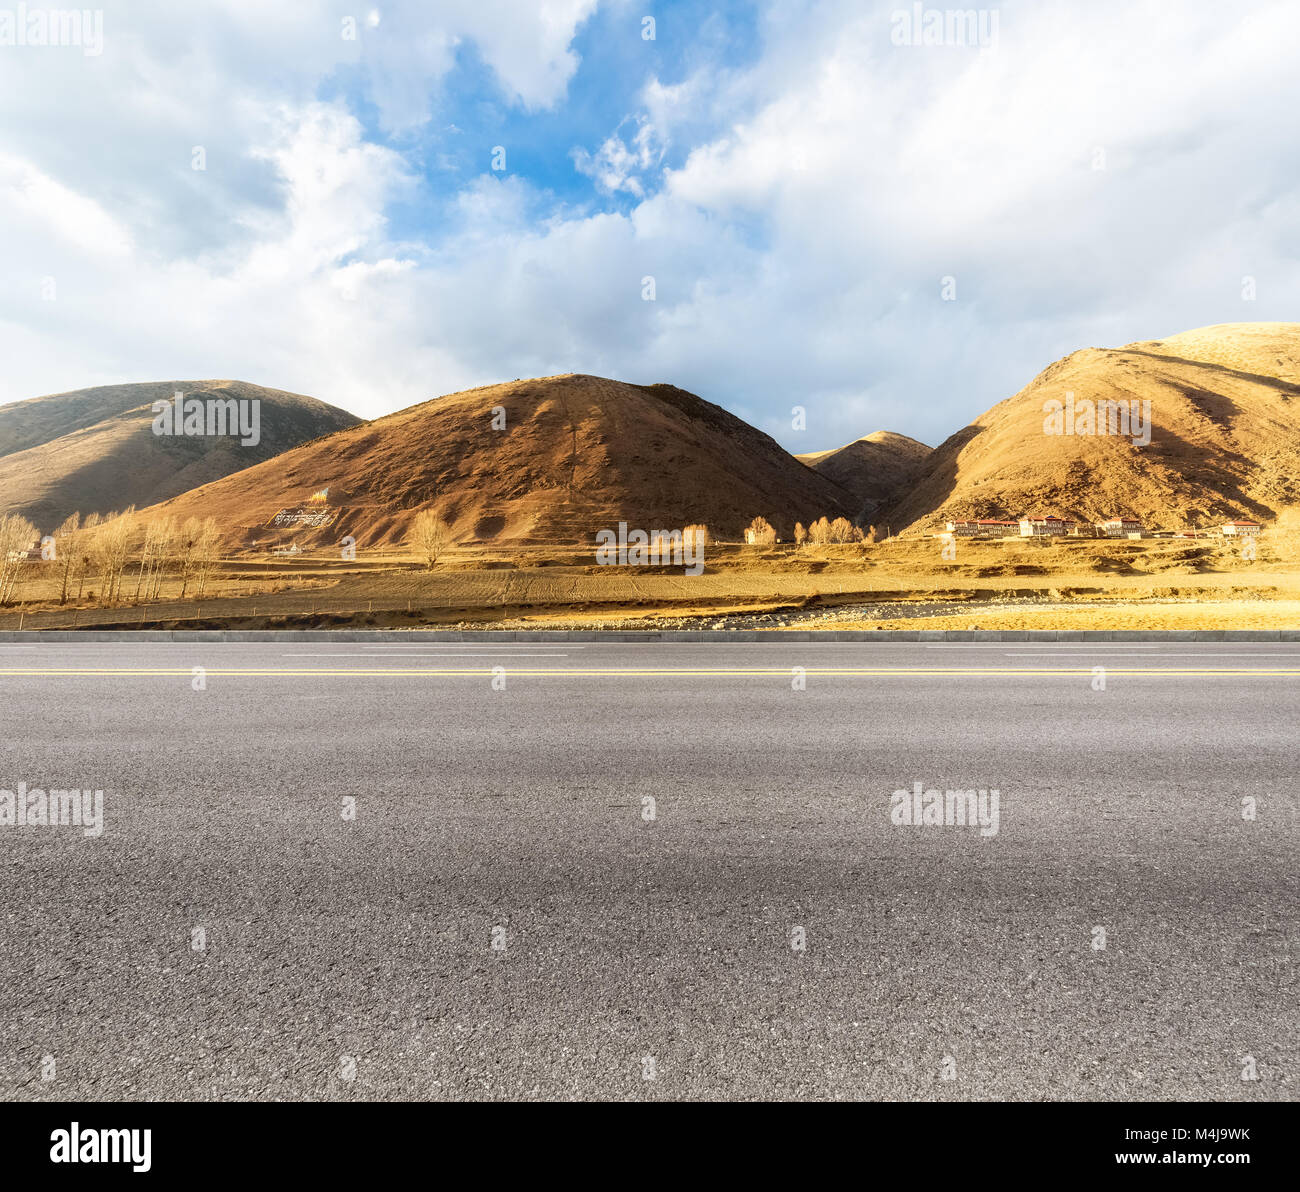 empty asphalt road in tibetan area Stock Photo